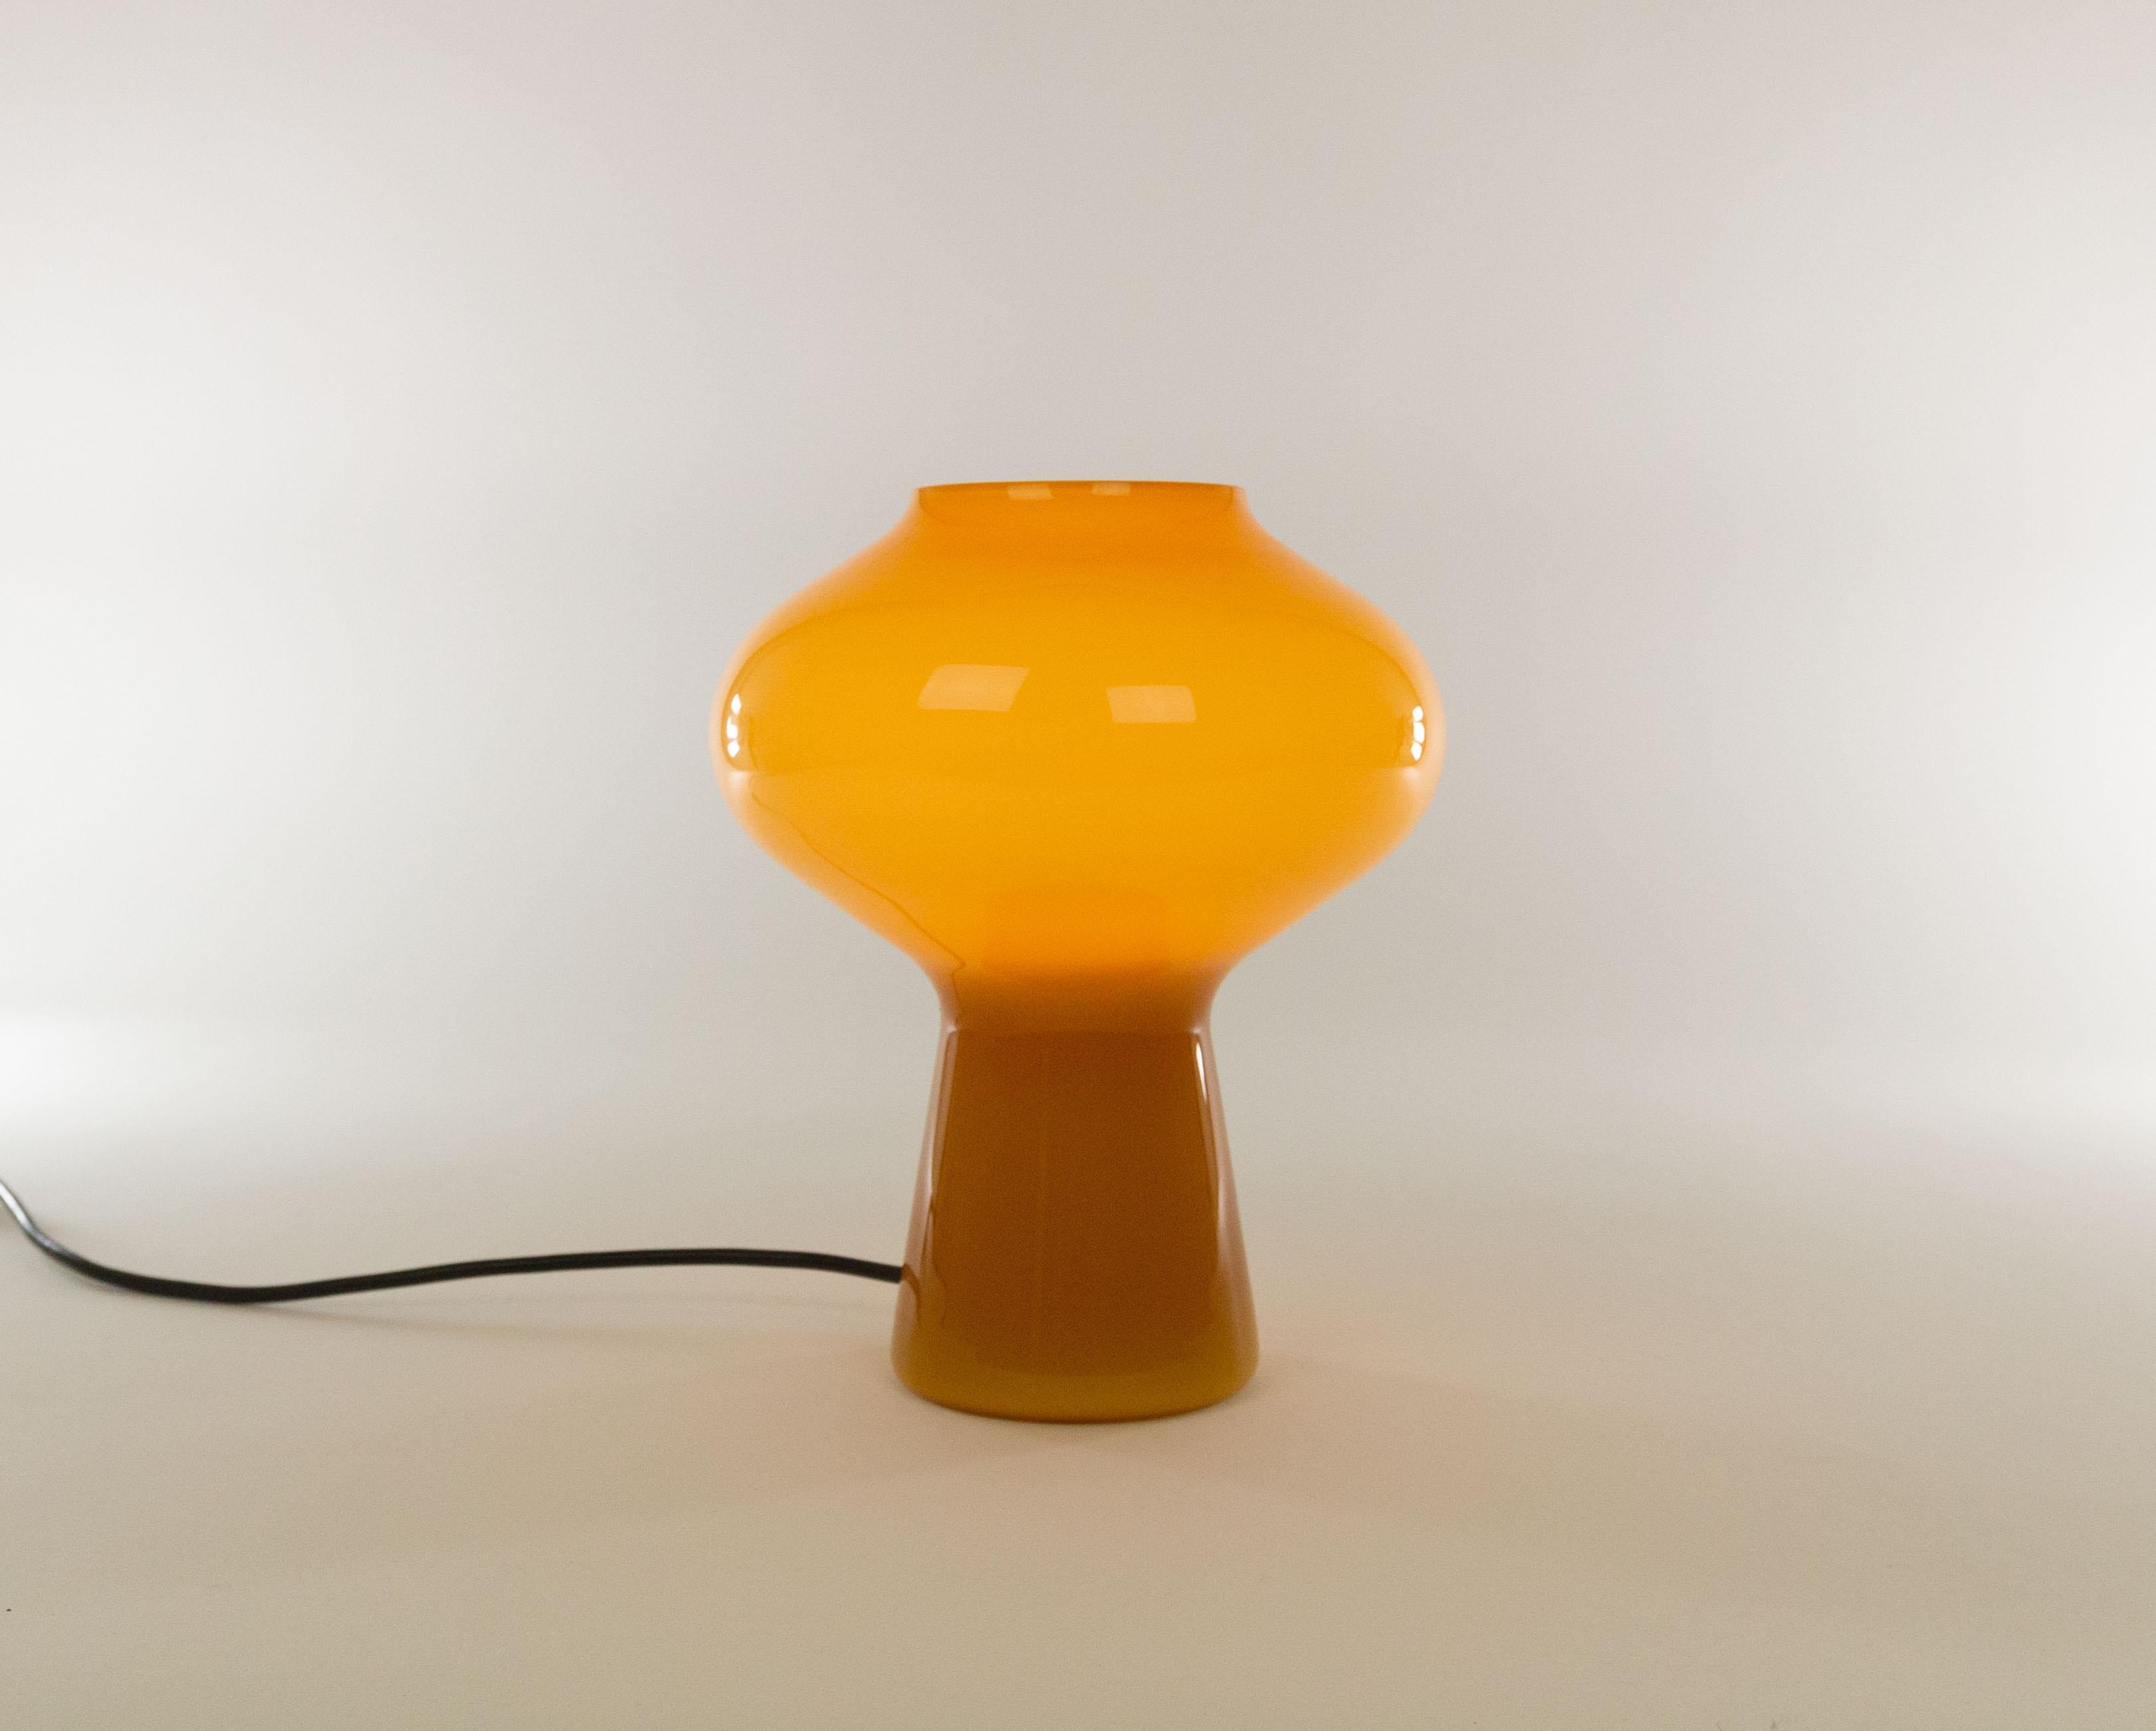 Lampe de table Fungo en verre ambré soufflé à la main, conçue par Massimo Vignelli au début de son impressionnante carrière de designer et exécutée par Venini, spécialiste du verre de Murano. 

C'est la version moyenne haute. Veuillez noter que la